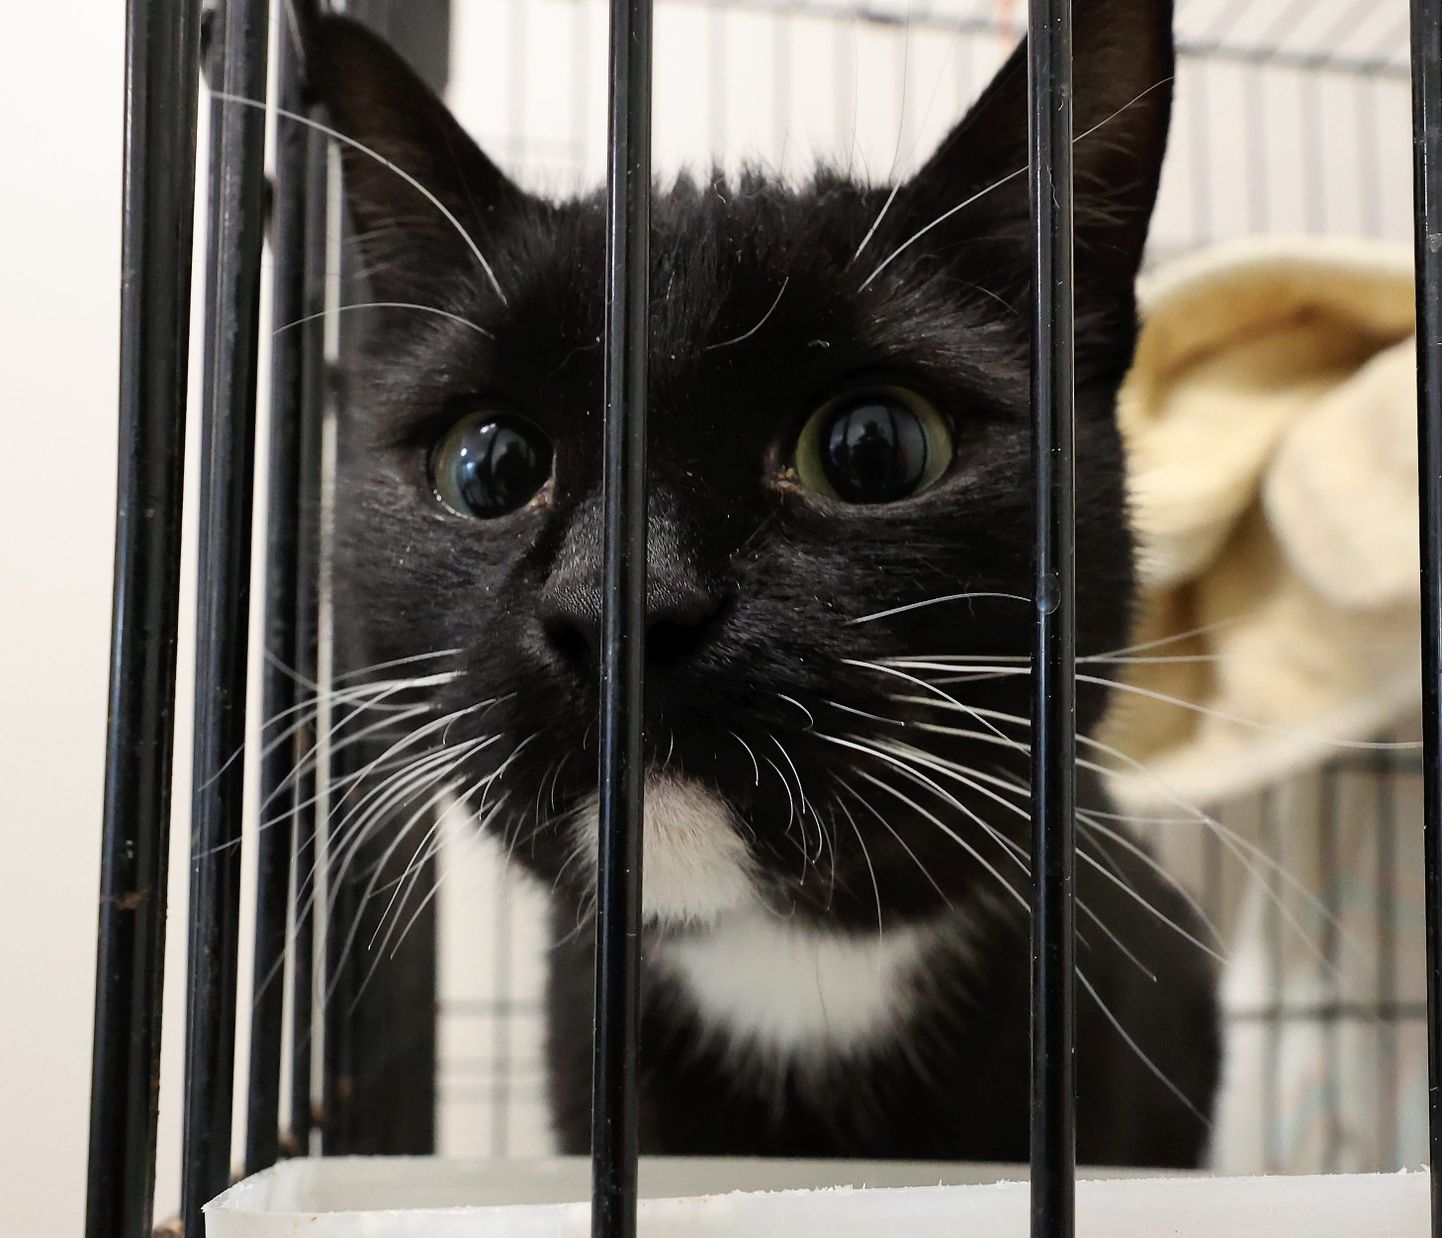 Pildil kass Tartu koduta loomade varjupaigas. Pilt on artiklit illustreeriv.